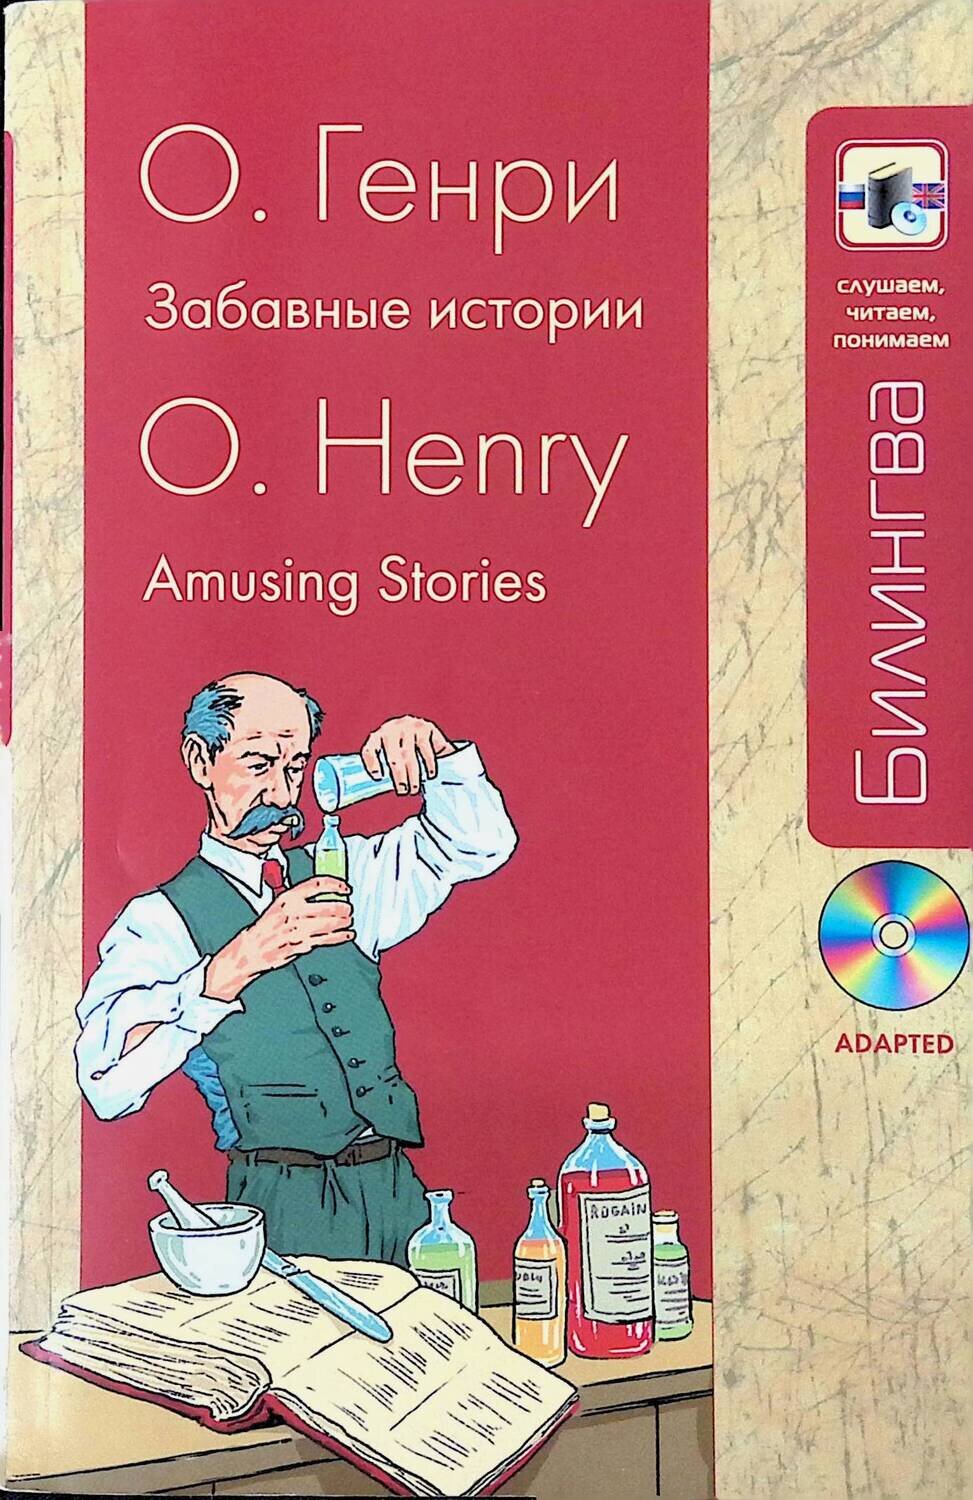 О. Генри. Забавные истории / O. Henry: Amusing Stories (+ CD); О. Генри